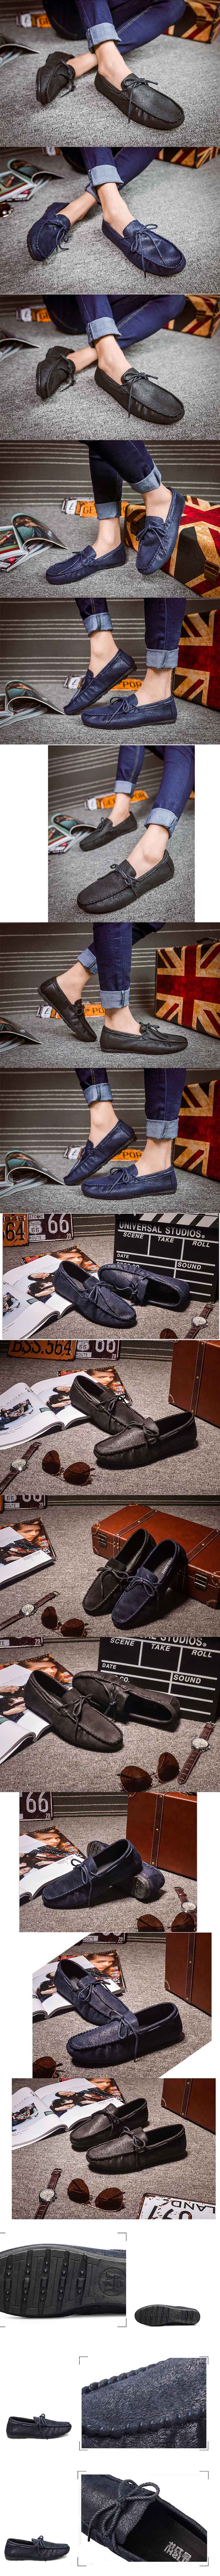 jual sepatu slip on pria model yang sedang trend dikorea, temukan koleksi terlengkap sepatu pria online hanya di pfp store